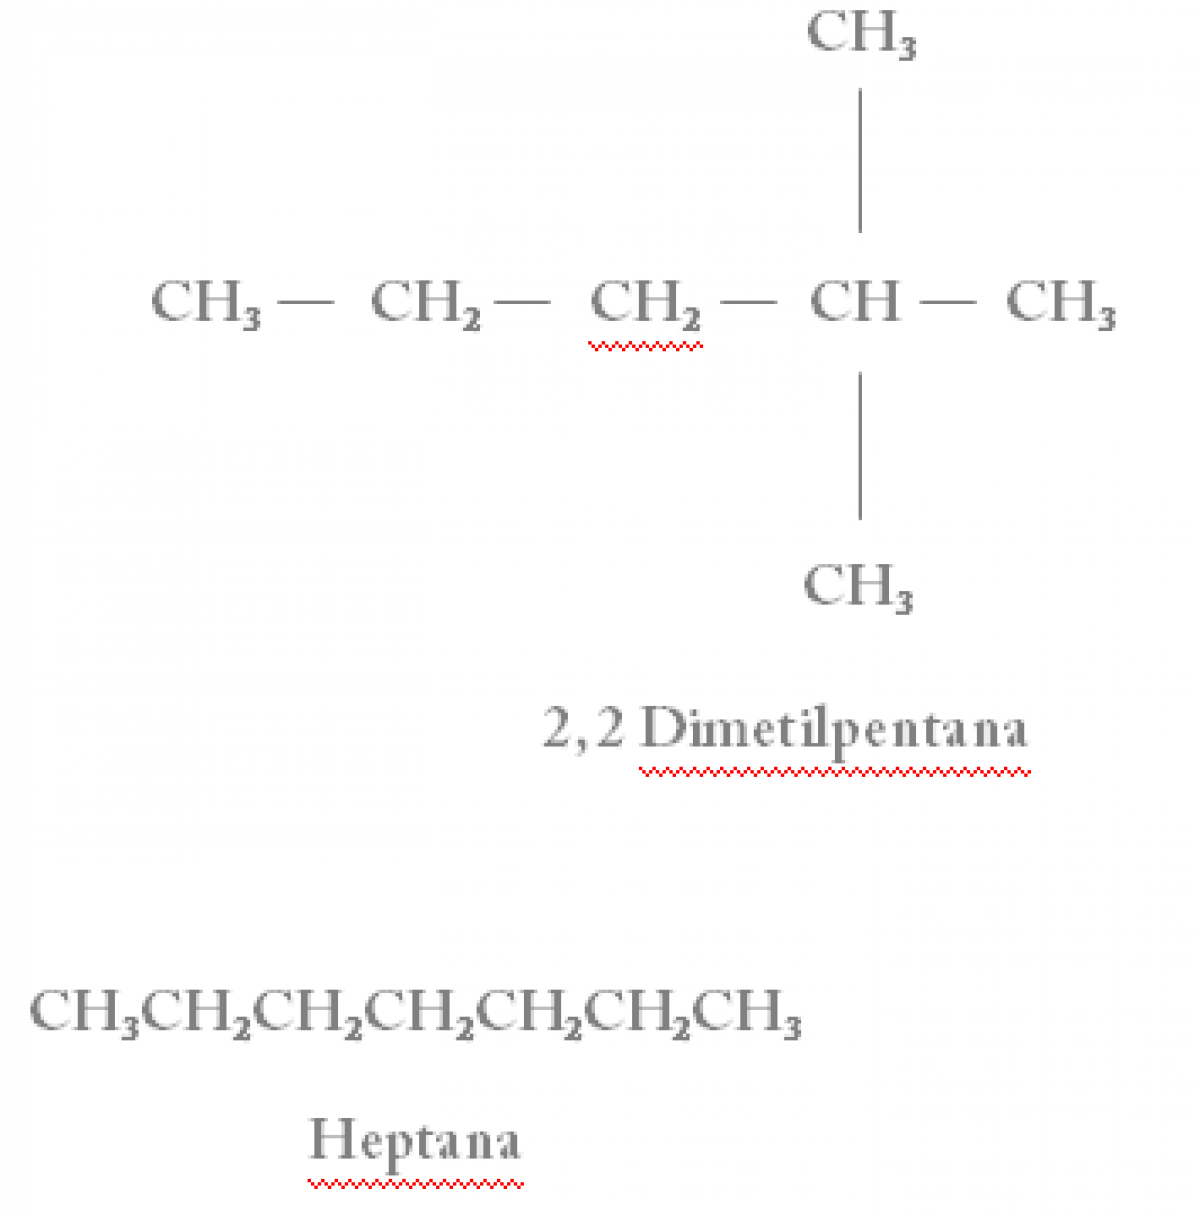 Senyawa yang mempunyai isomer cis-trans adalah